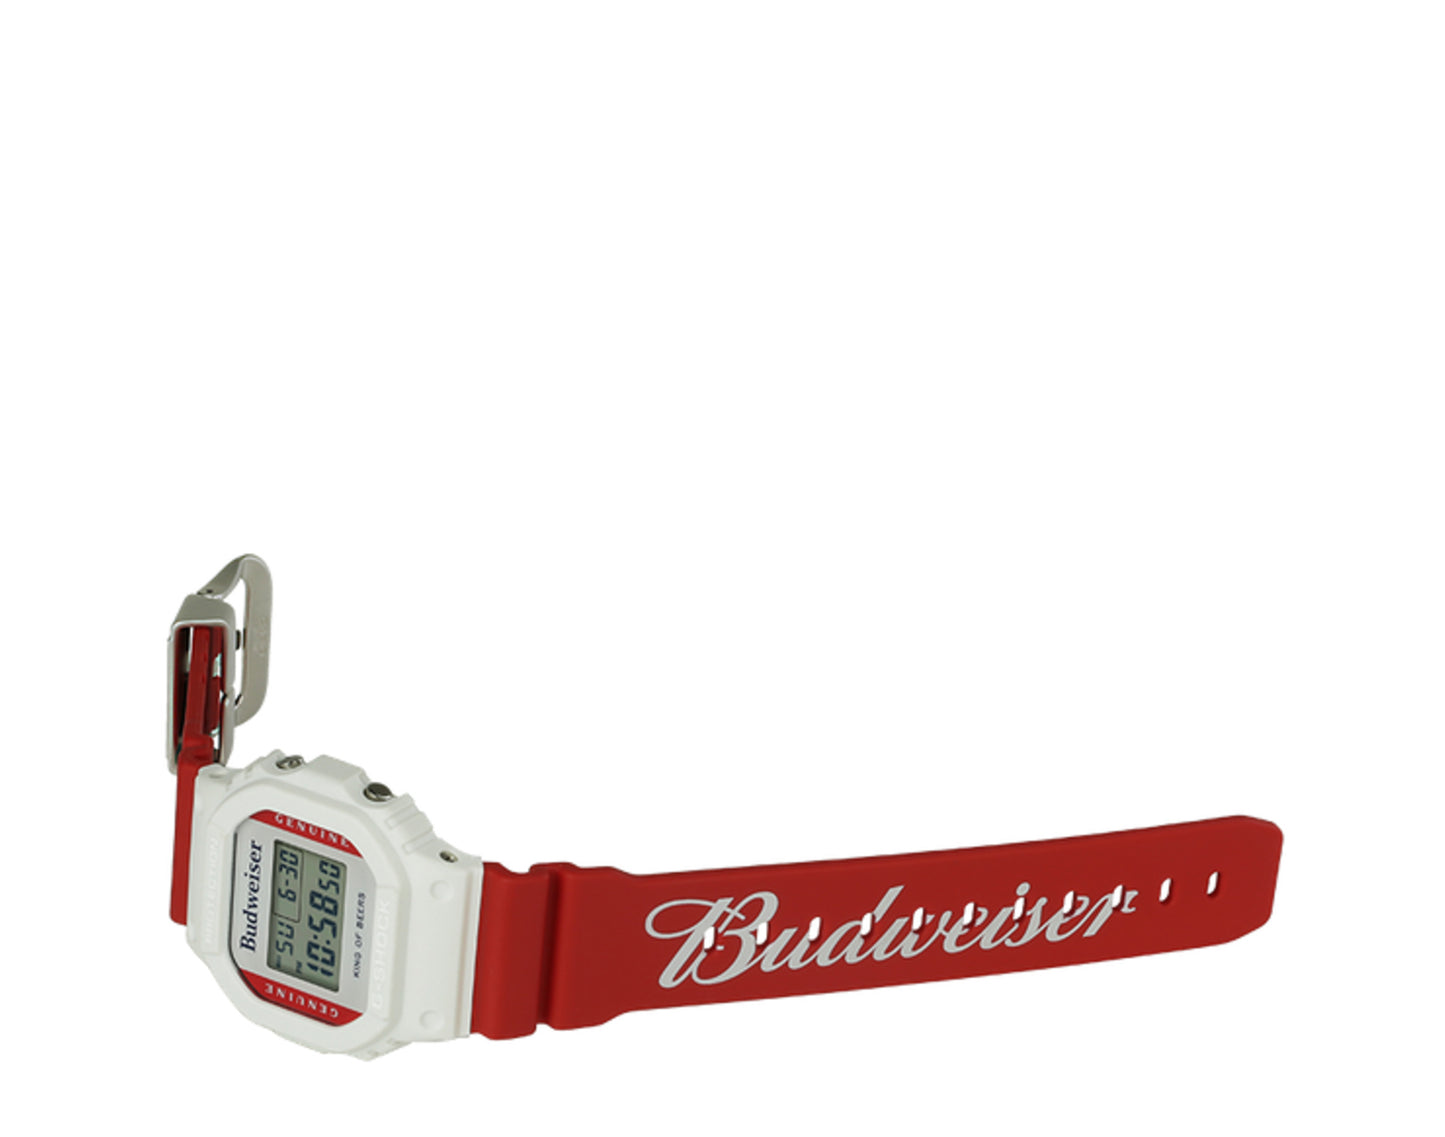 Casio G-Shock x Budweiser DW5600BUD20 Digital Watch